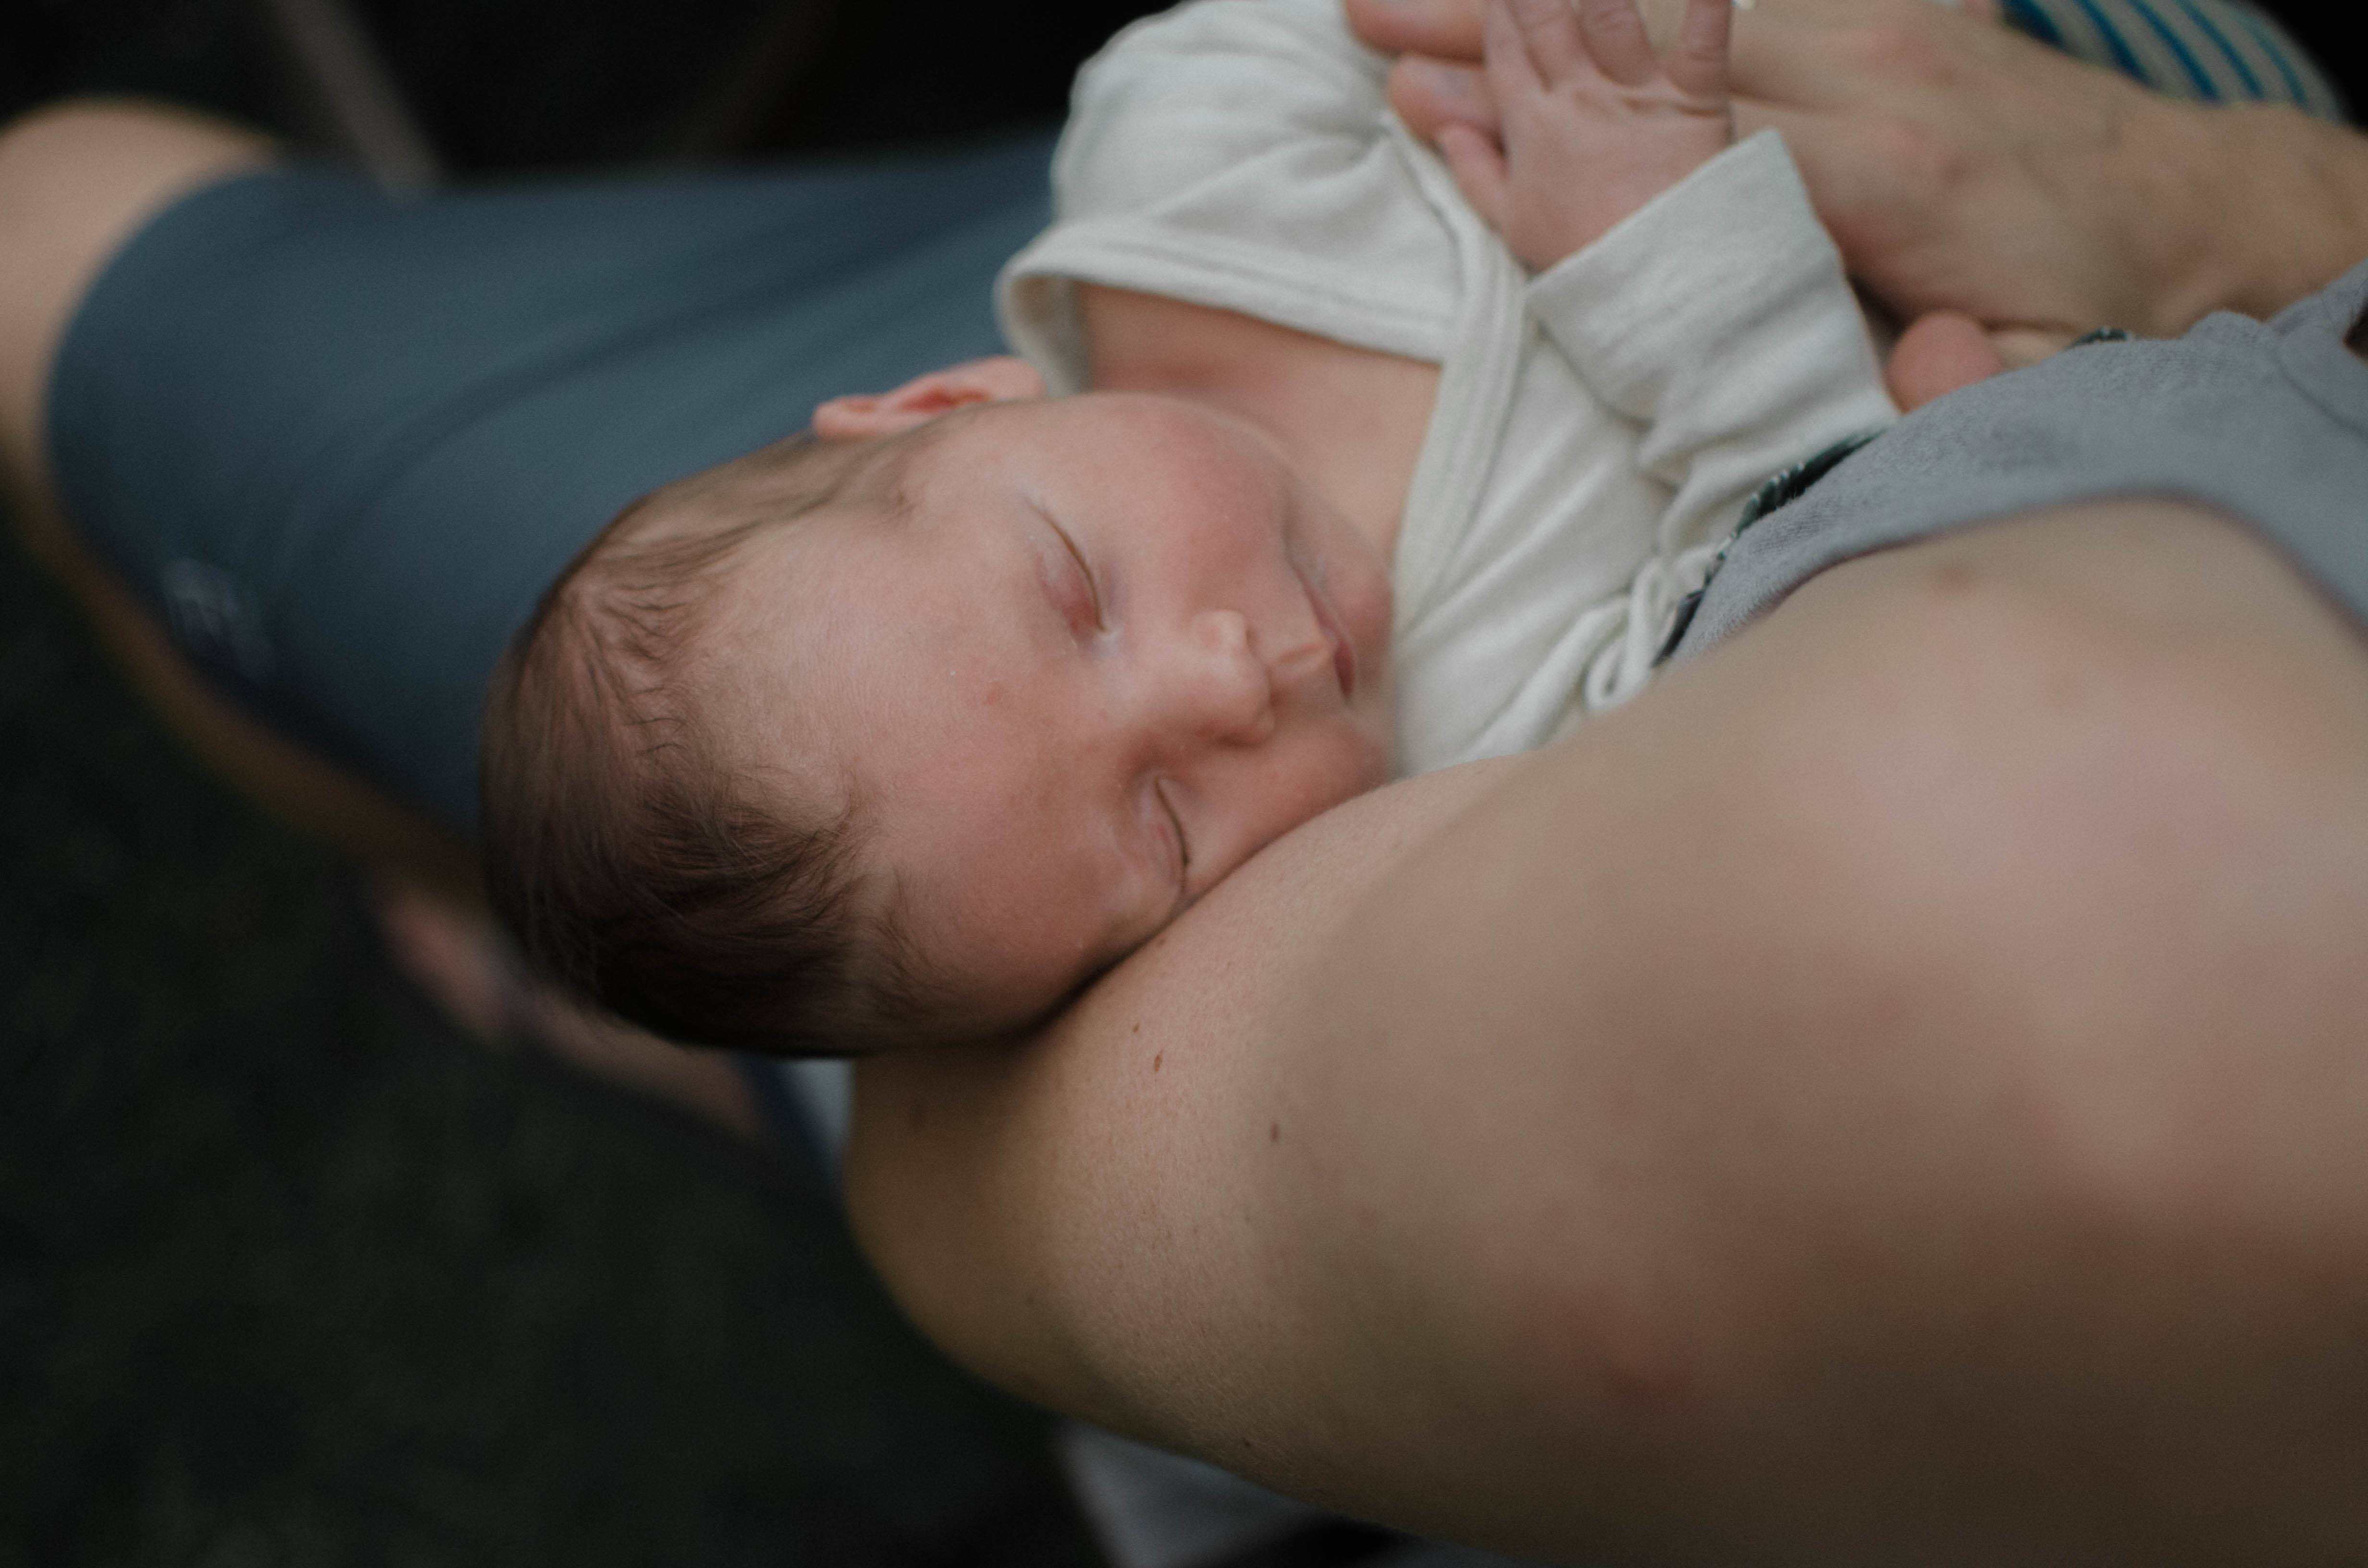 chenbett Fotoshooting Babyfotos Newborn Berlin DSC_8687